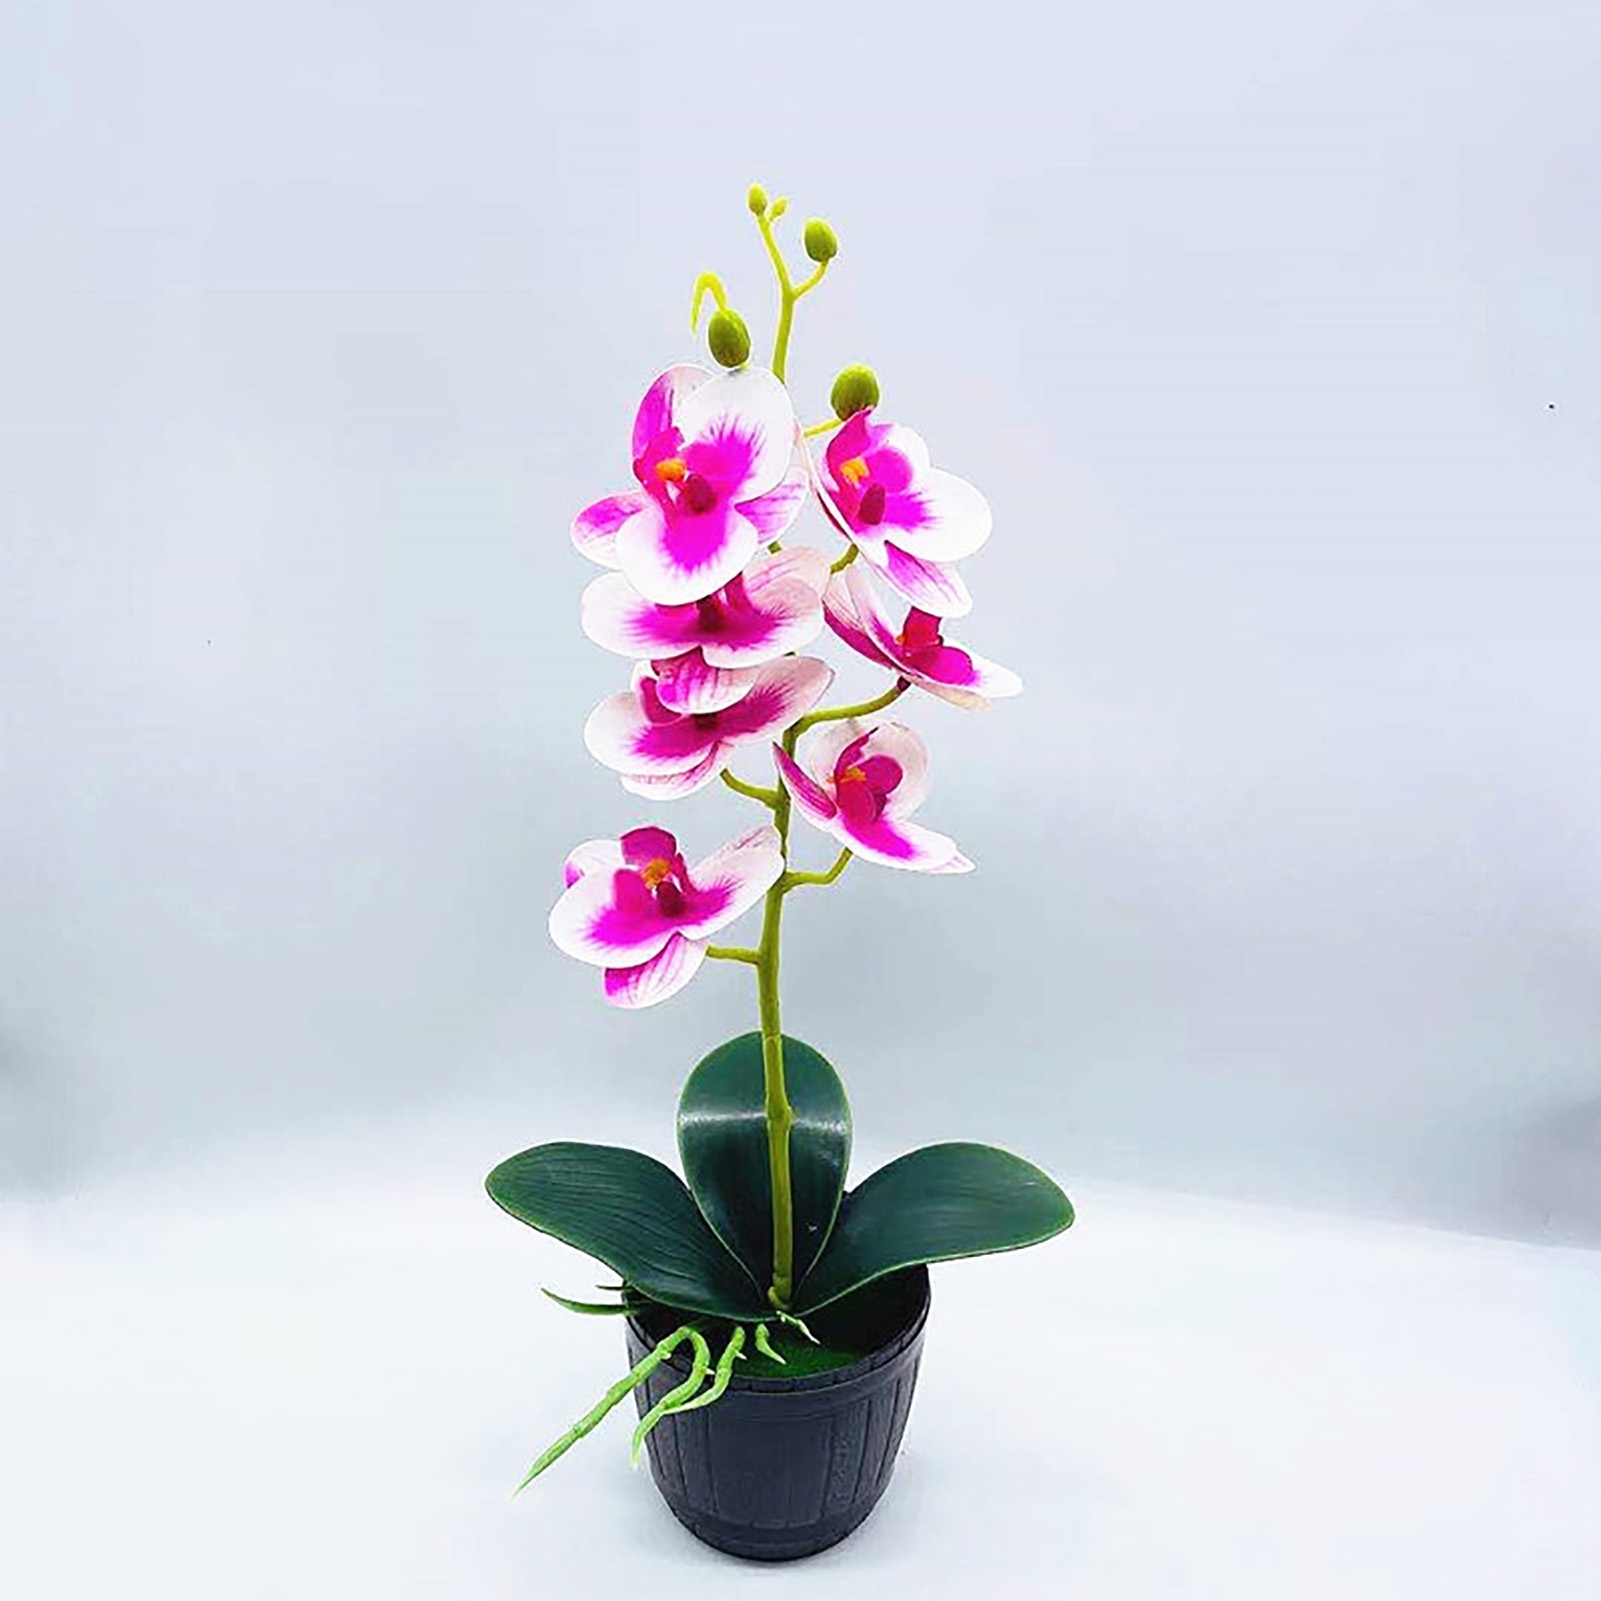 Орхидея в горшке екатеринбург. Кашпо для орхидей декоративное. Орхидея в горшке в подарок. Орхидея в горшке белая с фиолетом. Орхидея в кашпо китайском.